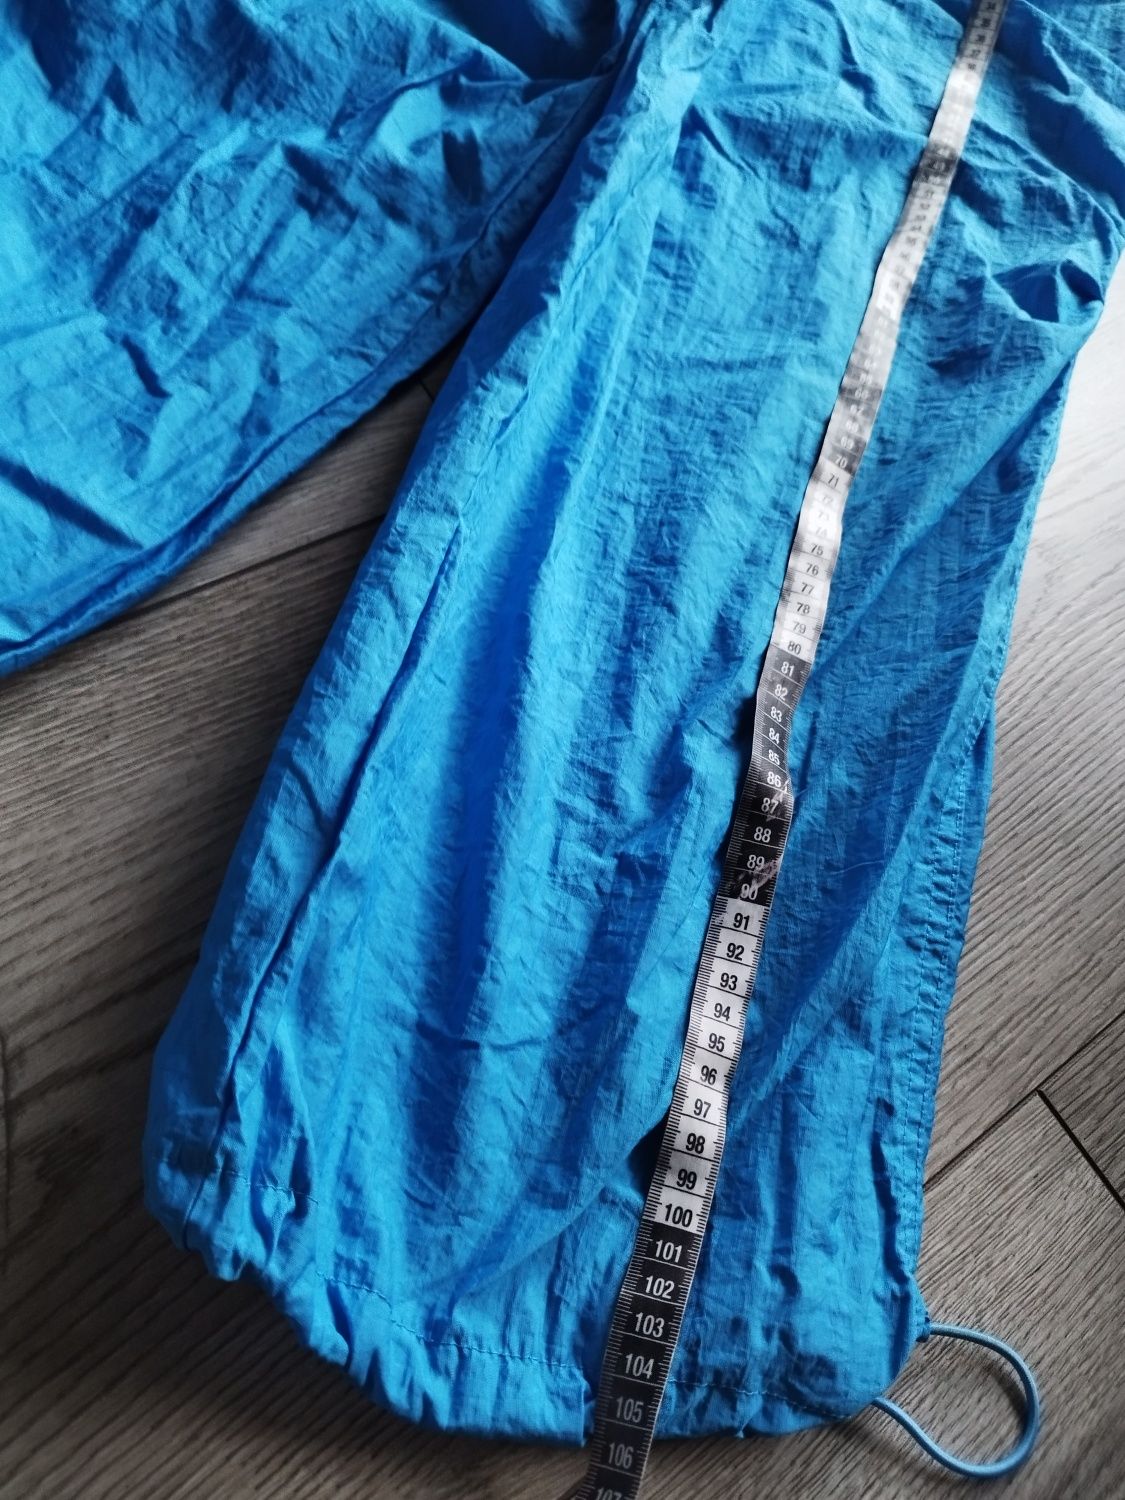 R.40 42 topshop/asos niebieskie spodnie bojówki otralion damskie overs